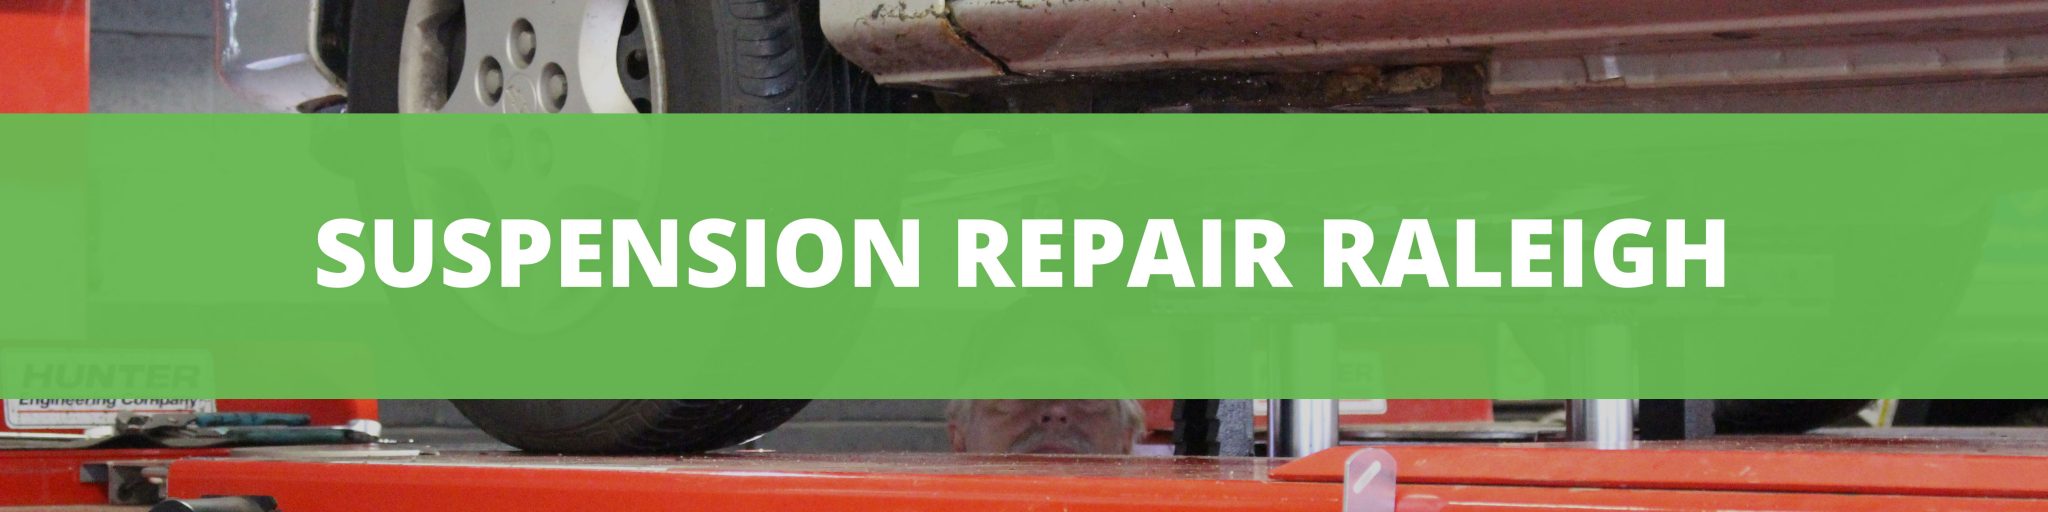 Car Repair: Car Repair Raleigh